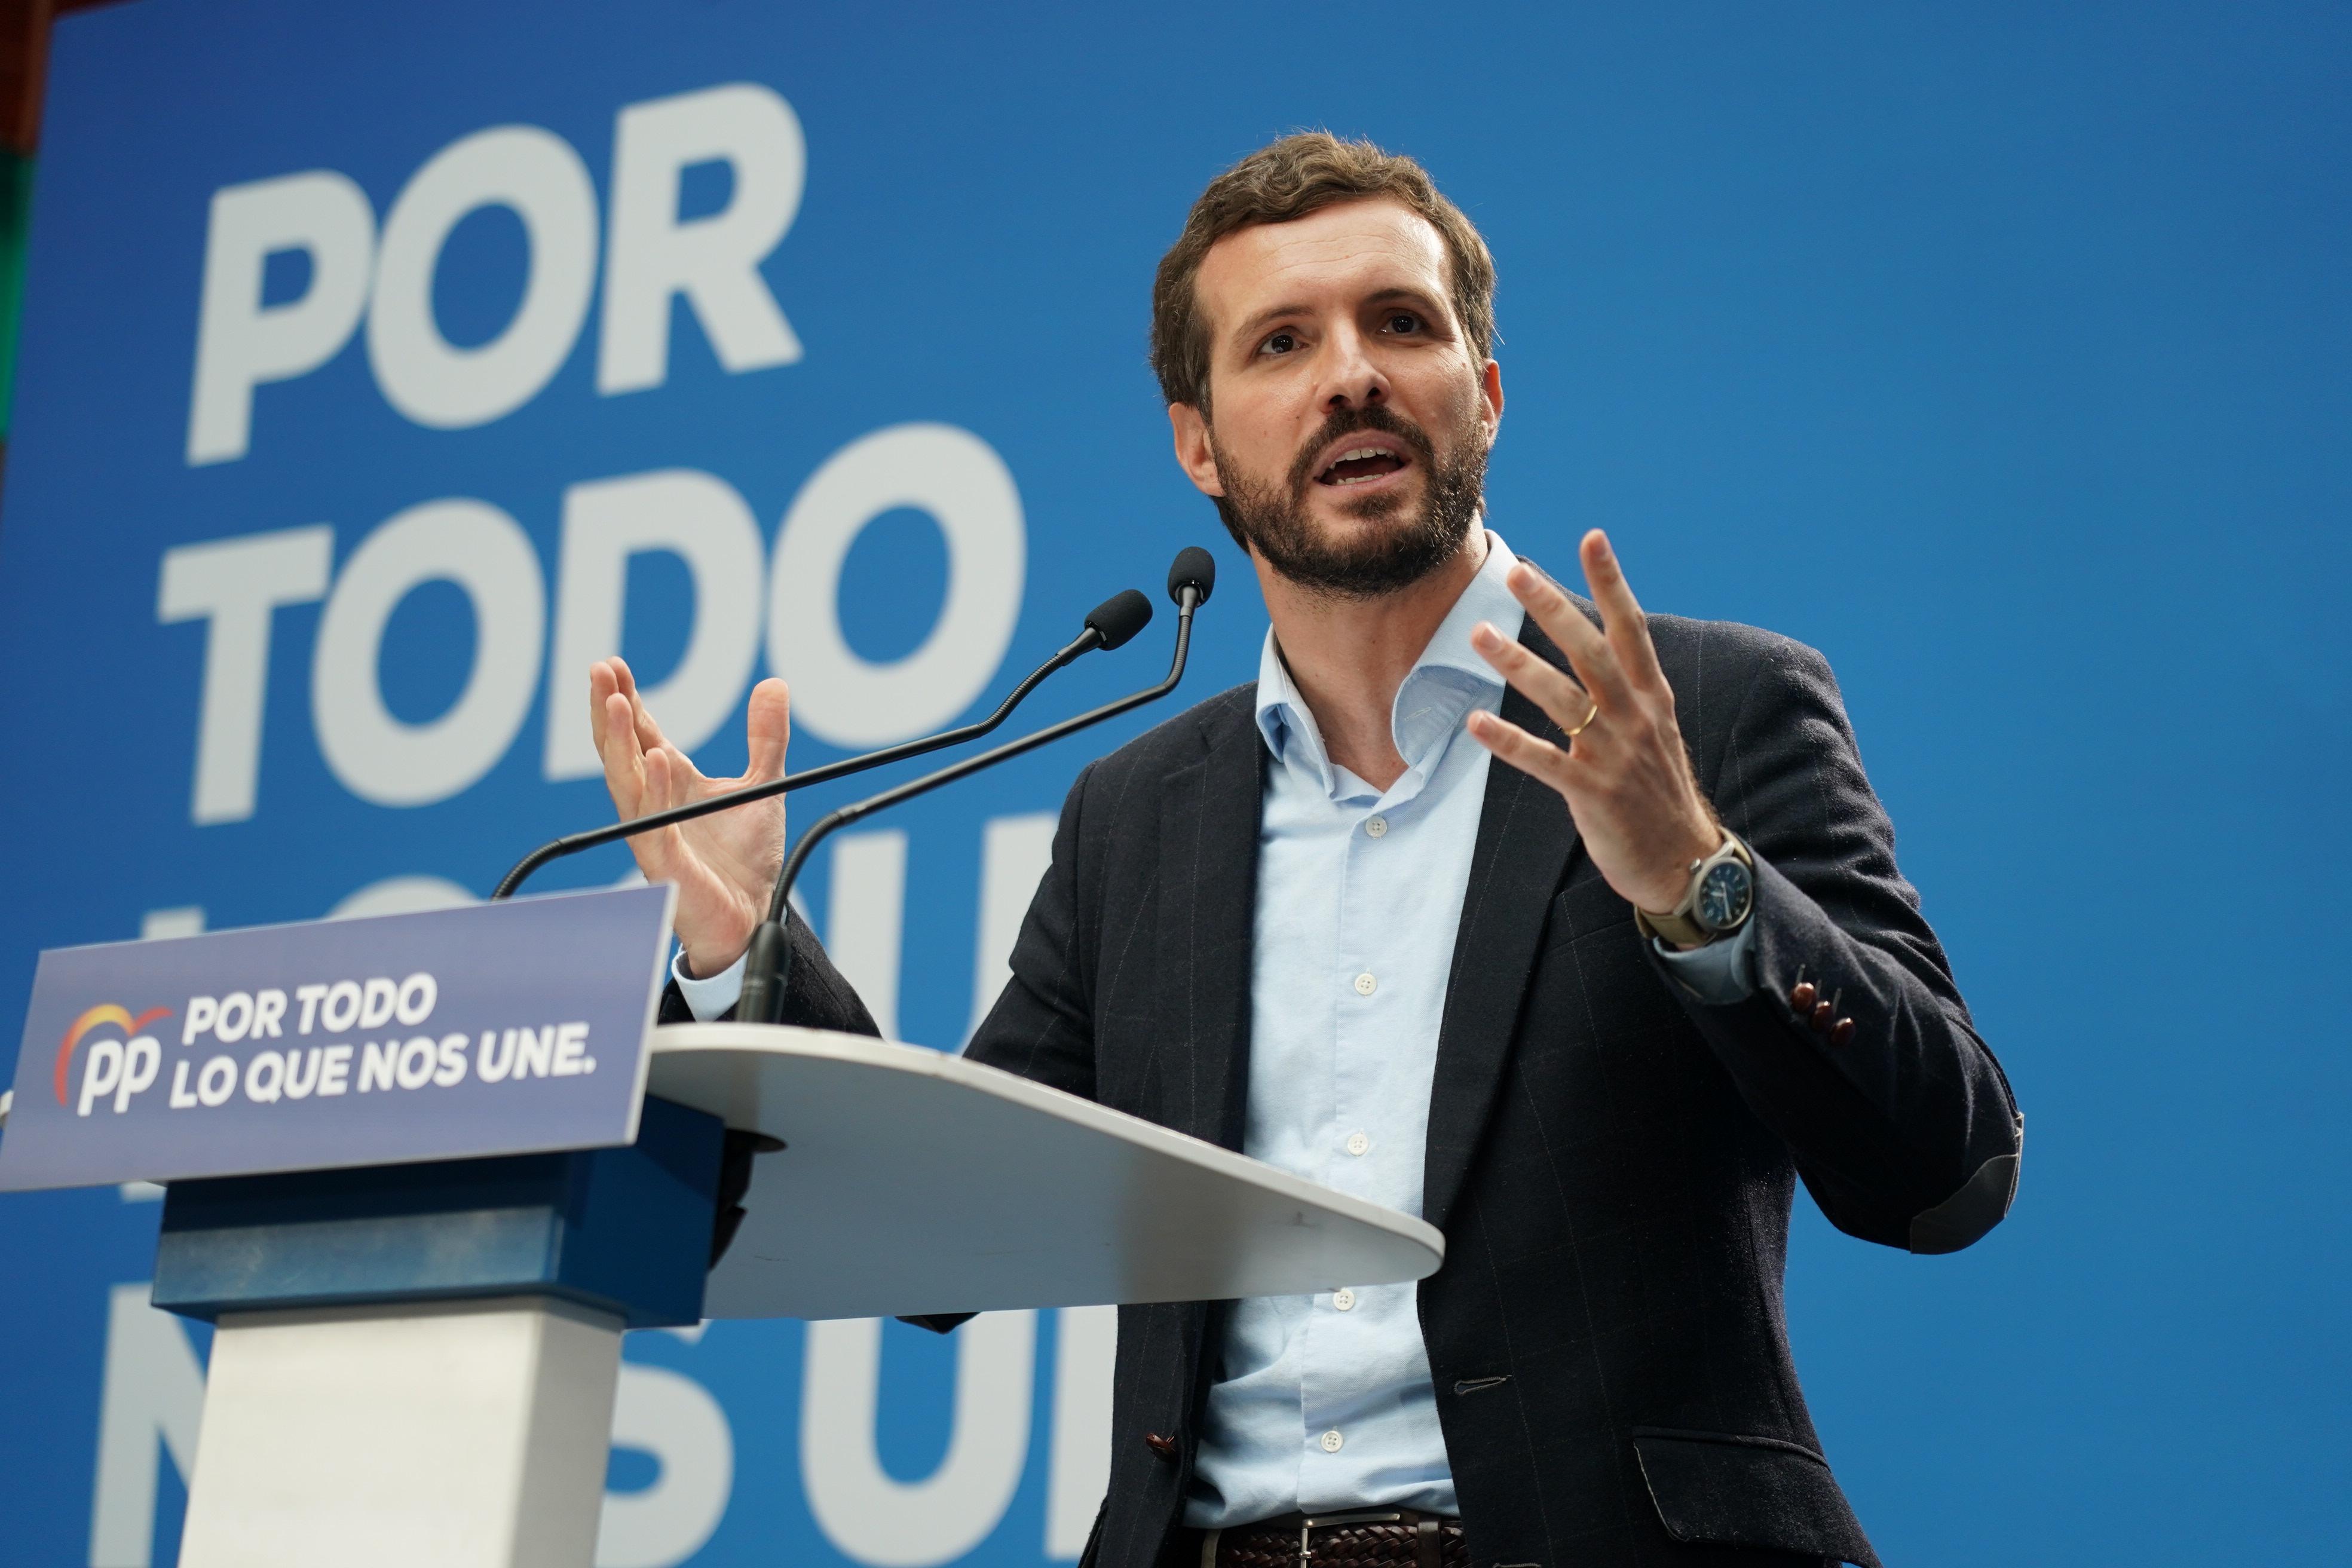 El presidente del PP y candidato del partido para el 10N Pablo Casado interviene en un acto electoral del Partido Popular en Vitoria. EP